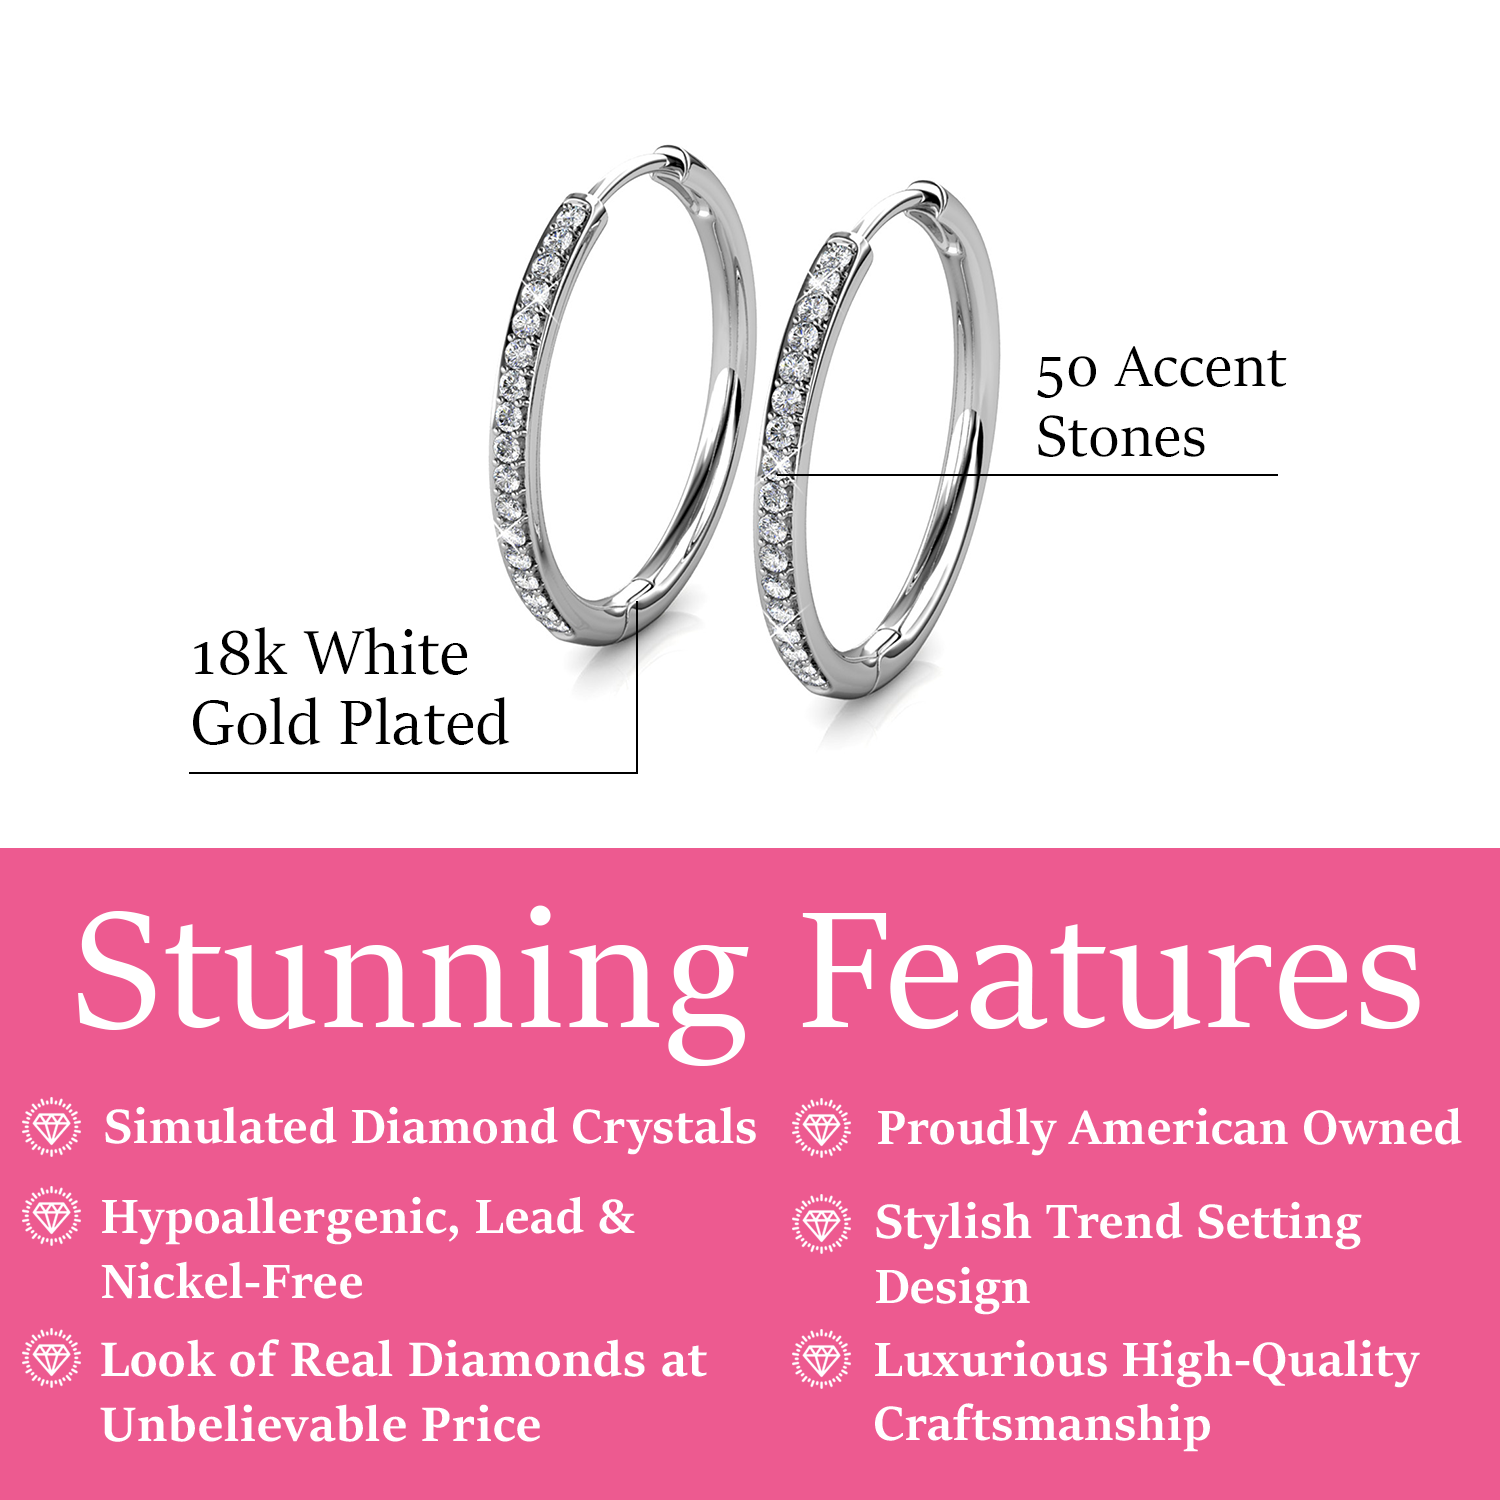 Leslie 18k White Gold Plated Crystal Hoop Earrings for Women